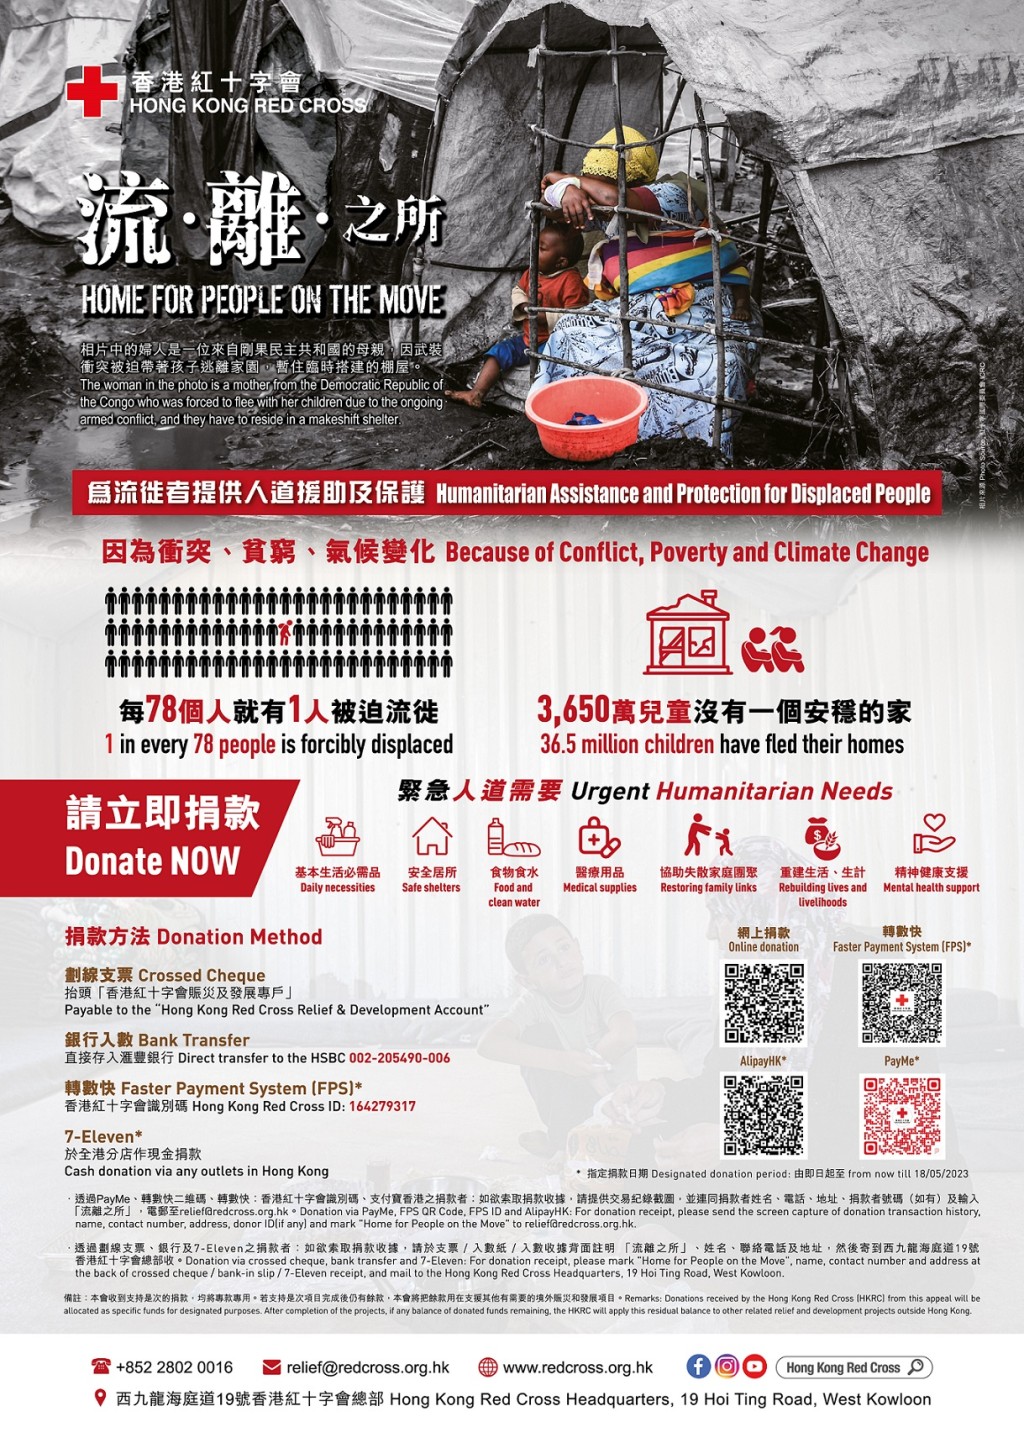 香港紅十字會冀社會各界捐款支持「流‧離‧之所」，為流徒者提供人道援助及保護。香港紅十字會